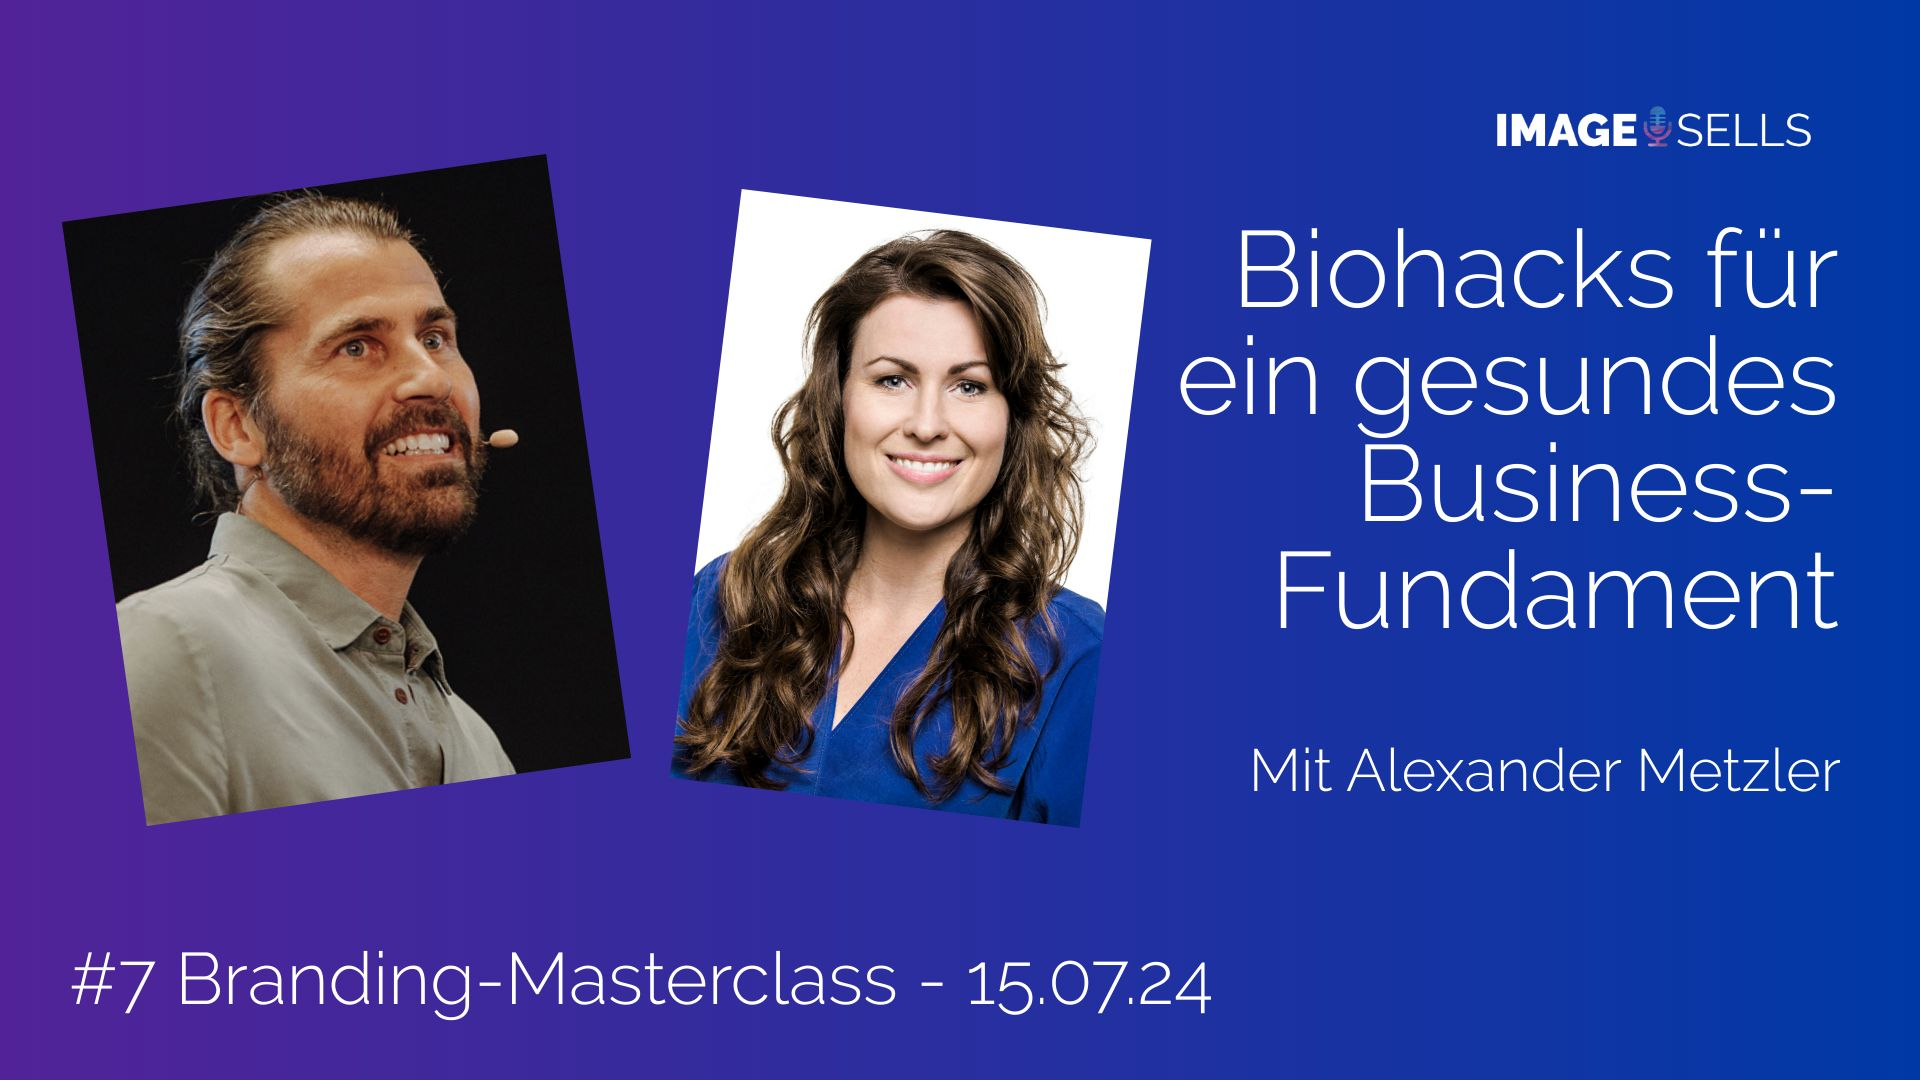 Branding-Masterclass mit Alexander Metzler und Carmen Brablec Image Sells zu Biohacks für ein gesundes Business-Fundament